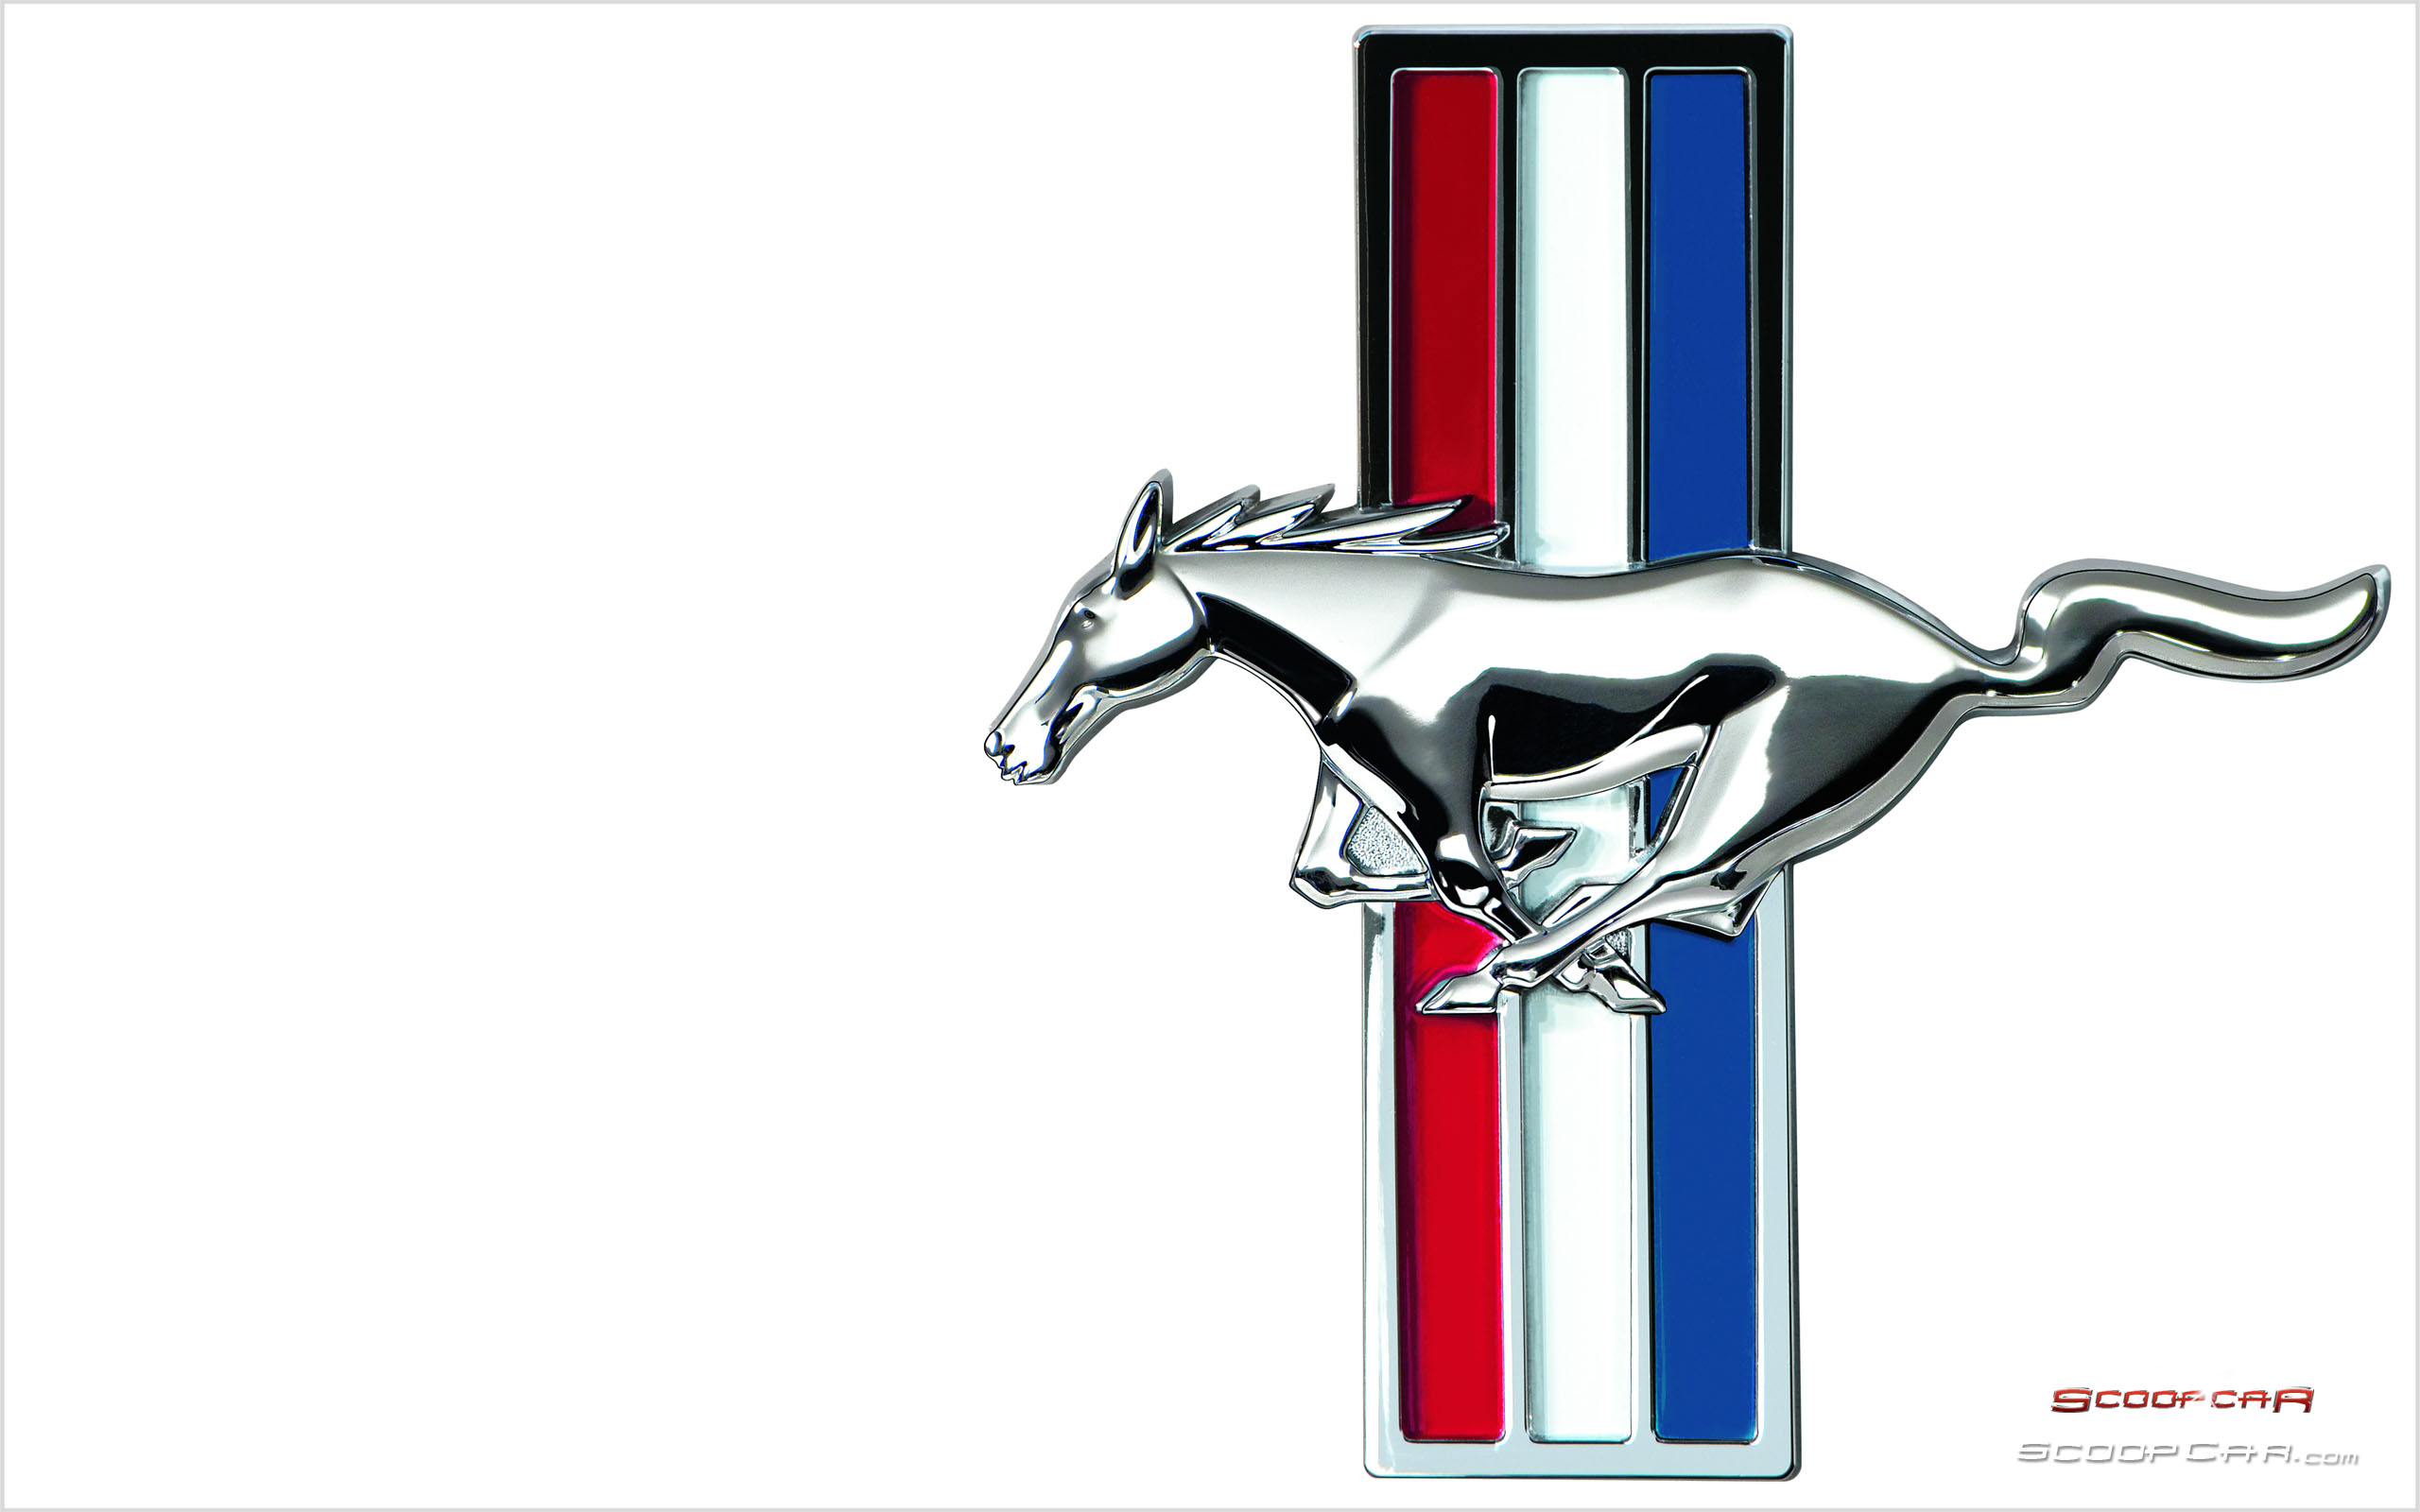 Ford Logo Car Clipart